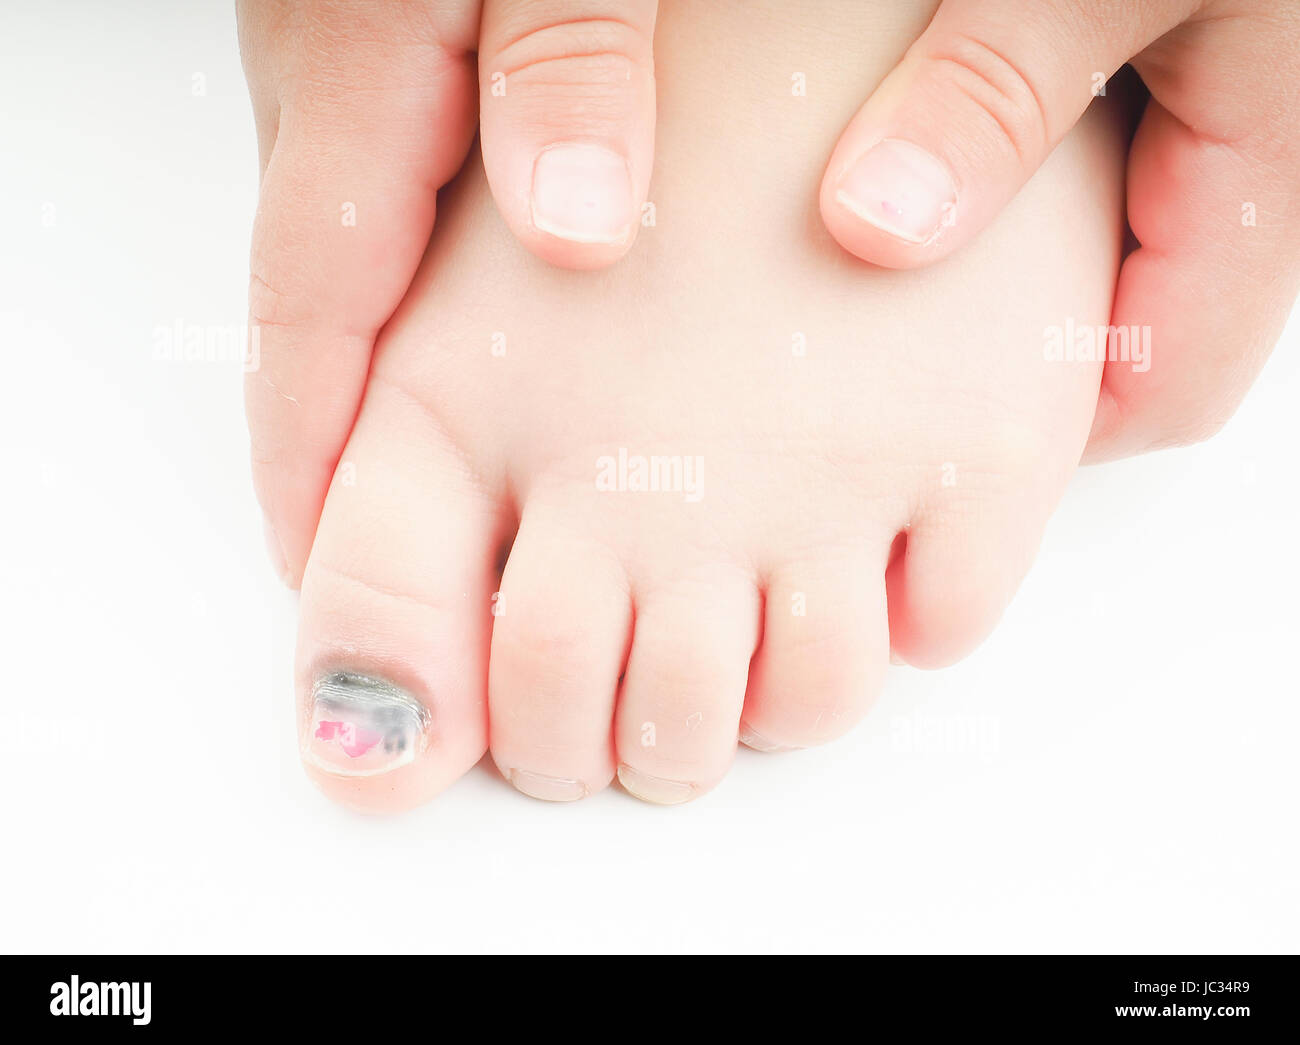 Kleine Mädchen auf ihren Fuß mit einem verletzten Großzehe halten zeigt blauen Nagel auf der Hallux mit ein klein wenig rosa Pediküre links Stockfoto